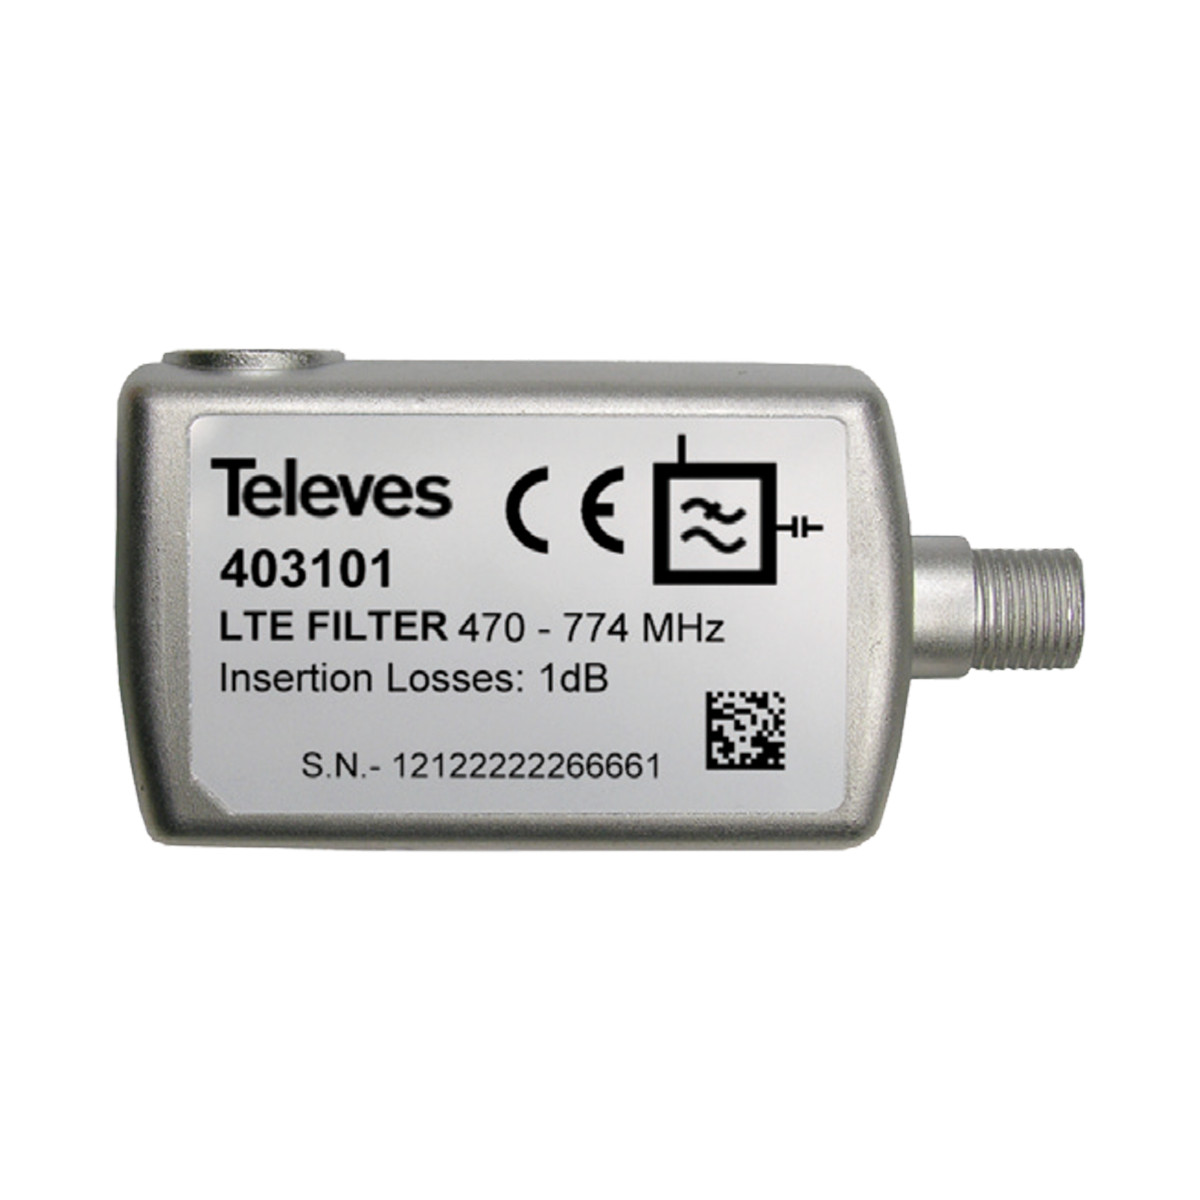 Televes 403101